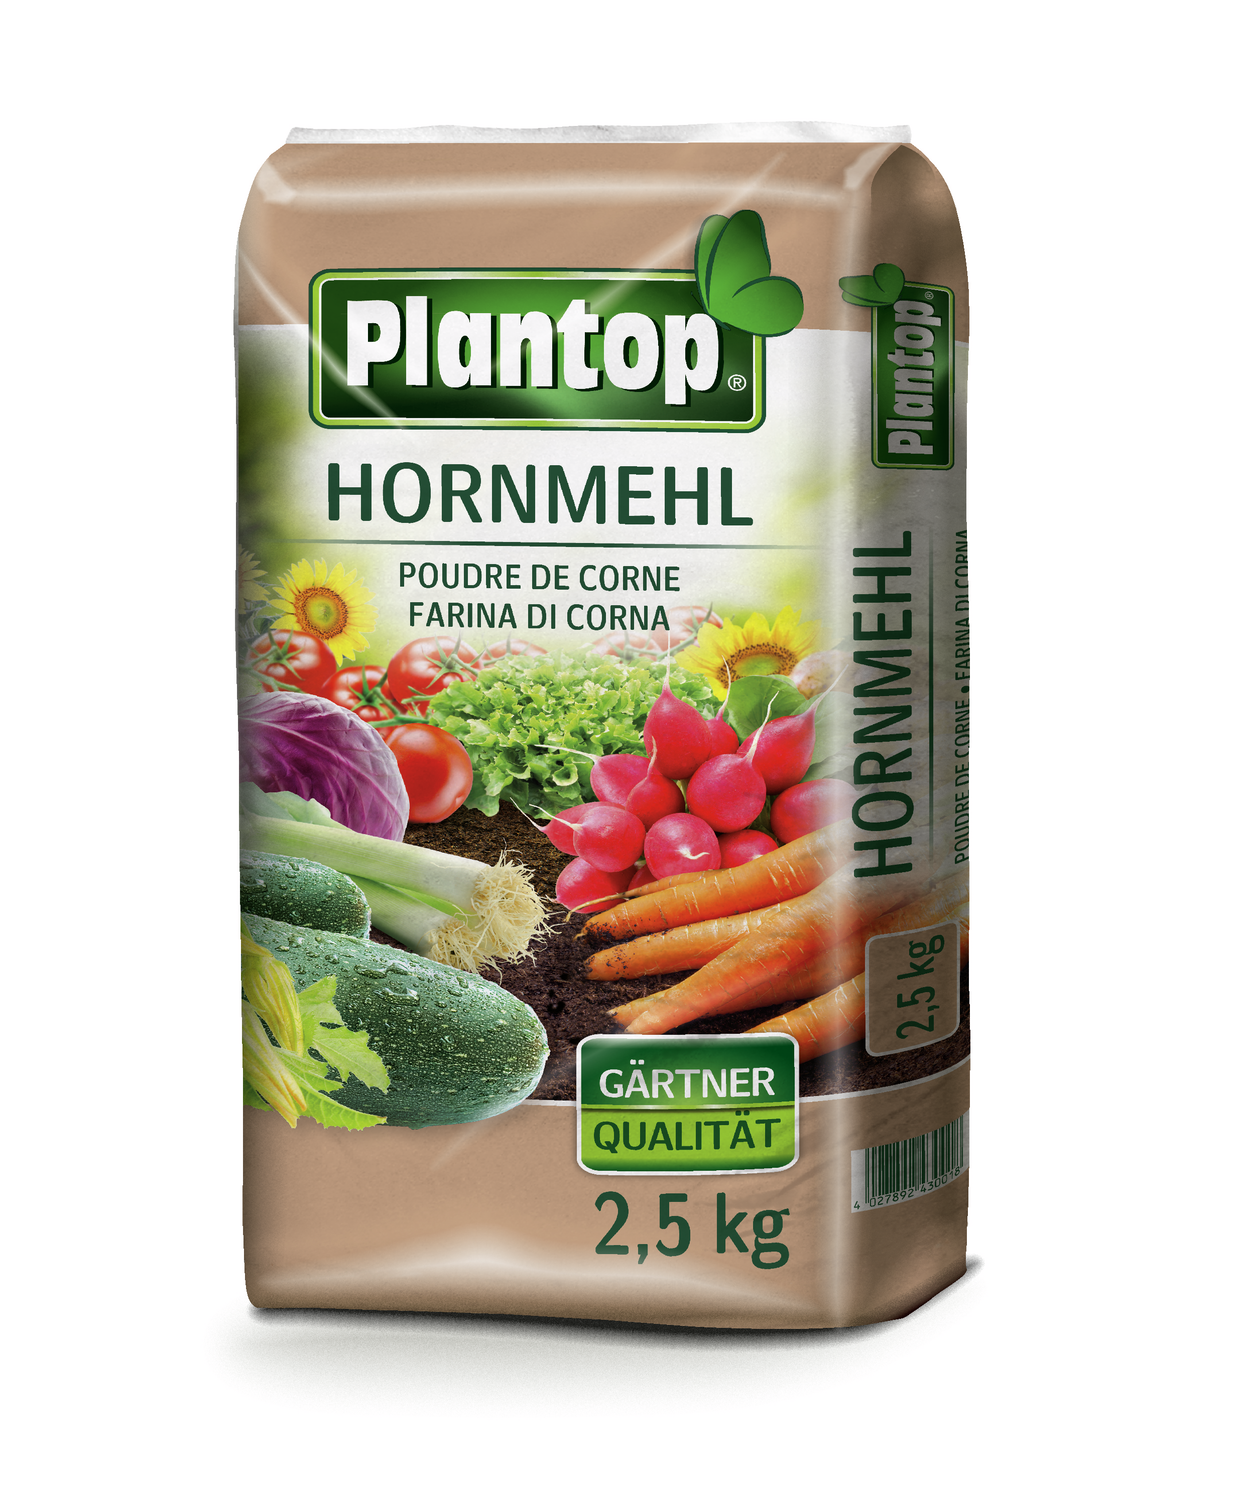 PLANTOP Hornmehl 2,5 kg organischer Stickstoffdünger 12% N